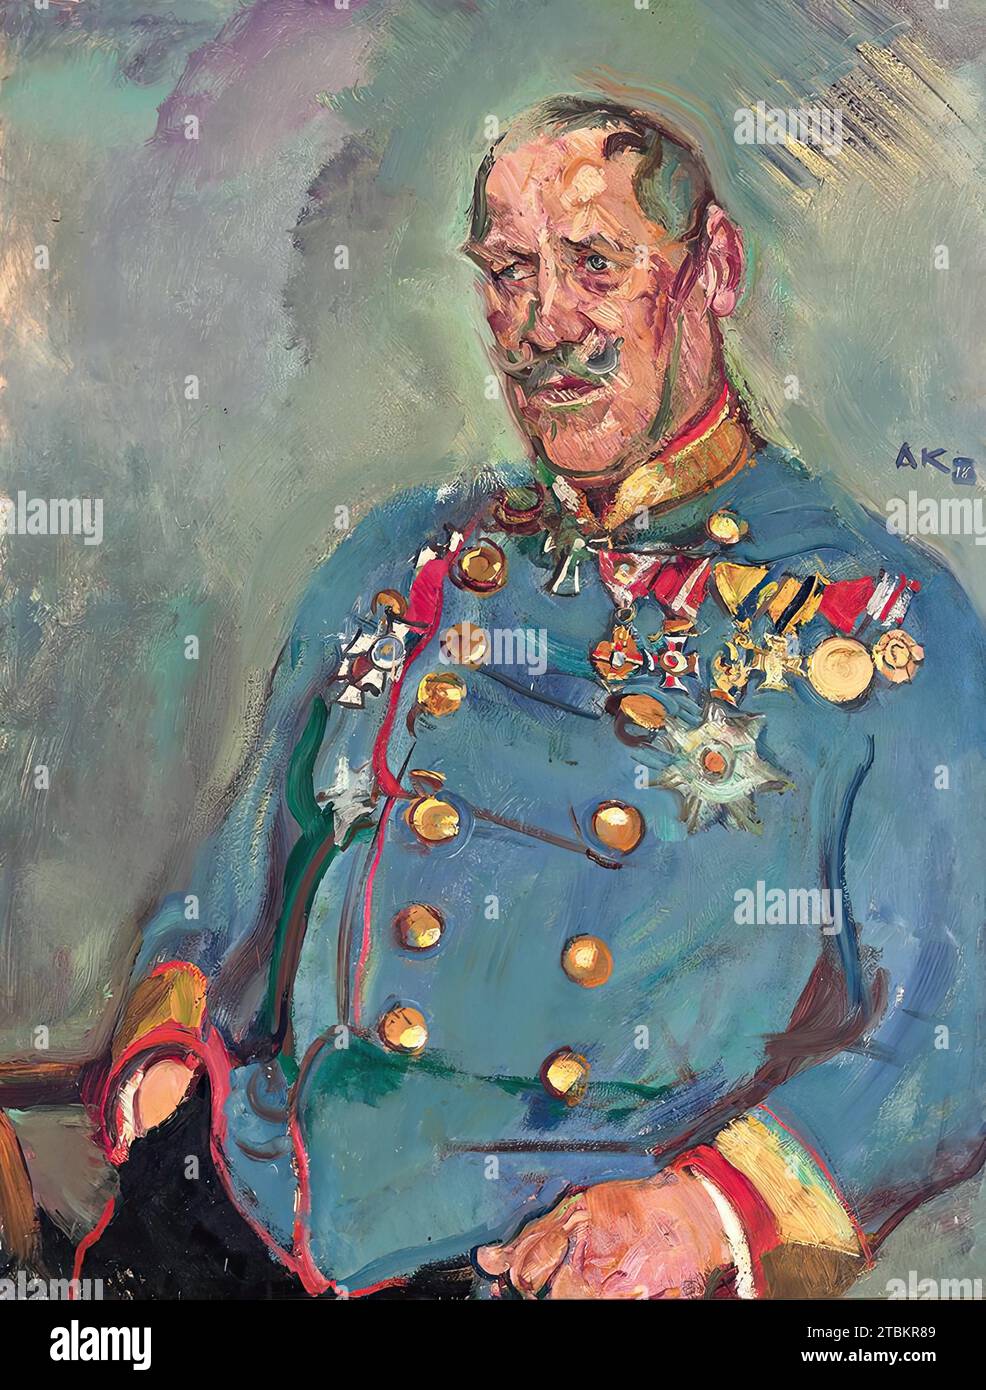 Generale Gottfried Seibt von Ringenhart, 1918. Generale Gottfried Seibt von Ringenhart (1857-1937), generale di fanteria dal 1914. Guidò varie iniziative di soccorso durante la prima guerra mondiale. Era a capo del War Welfare Office. Foto Stock